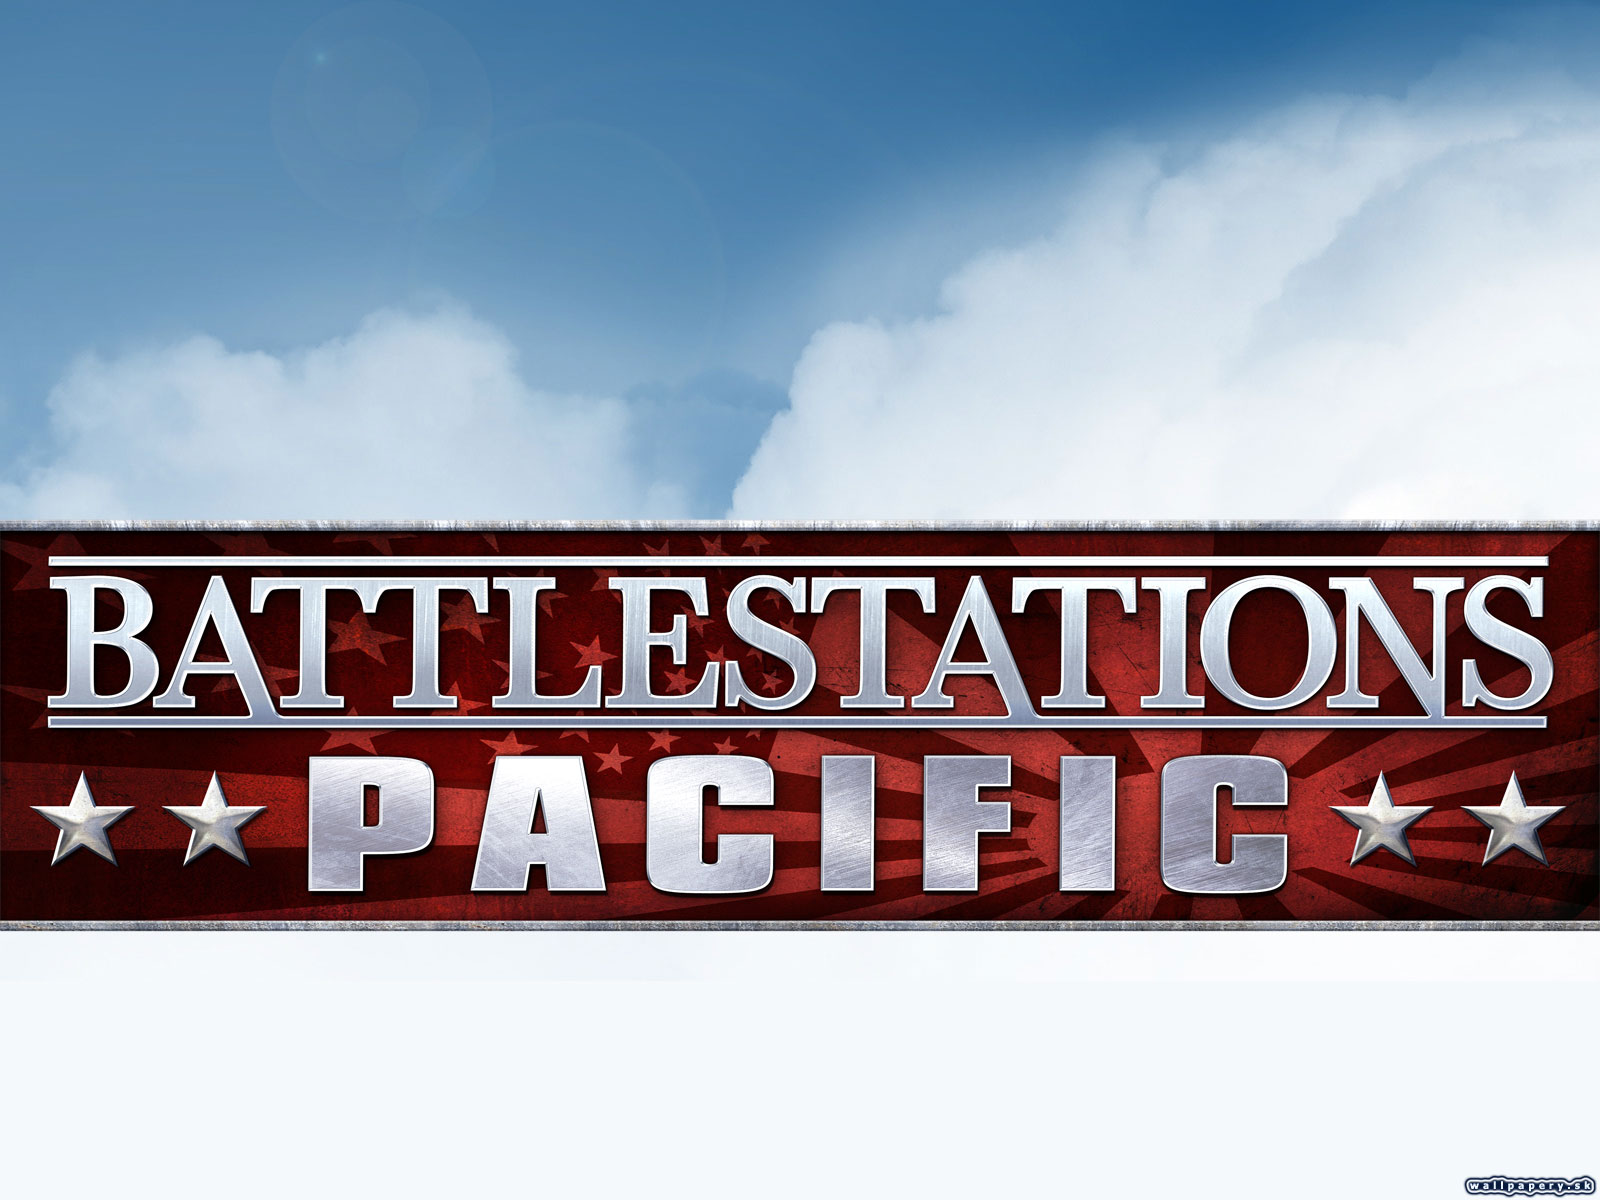 Battlestations: Pacific - wallpaper 4